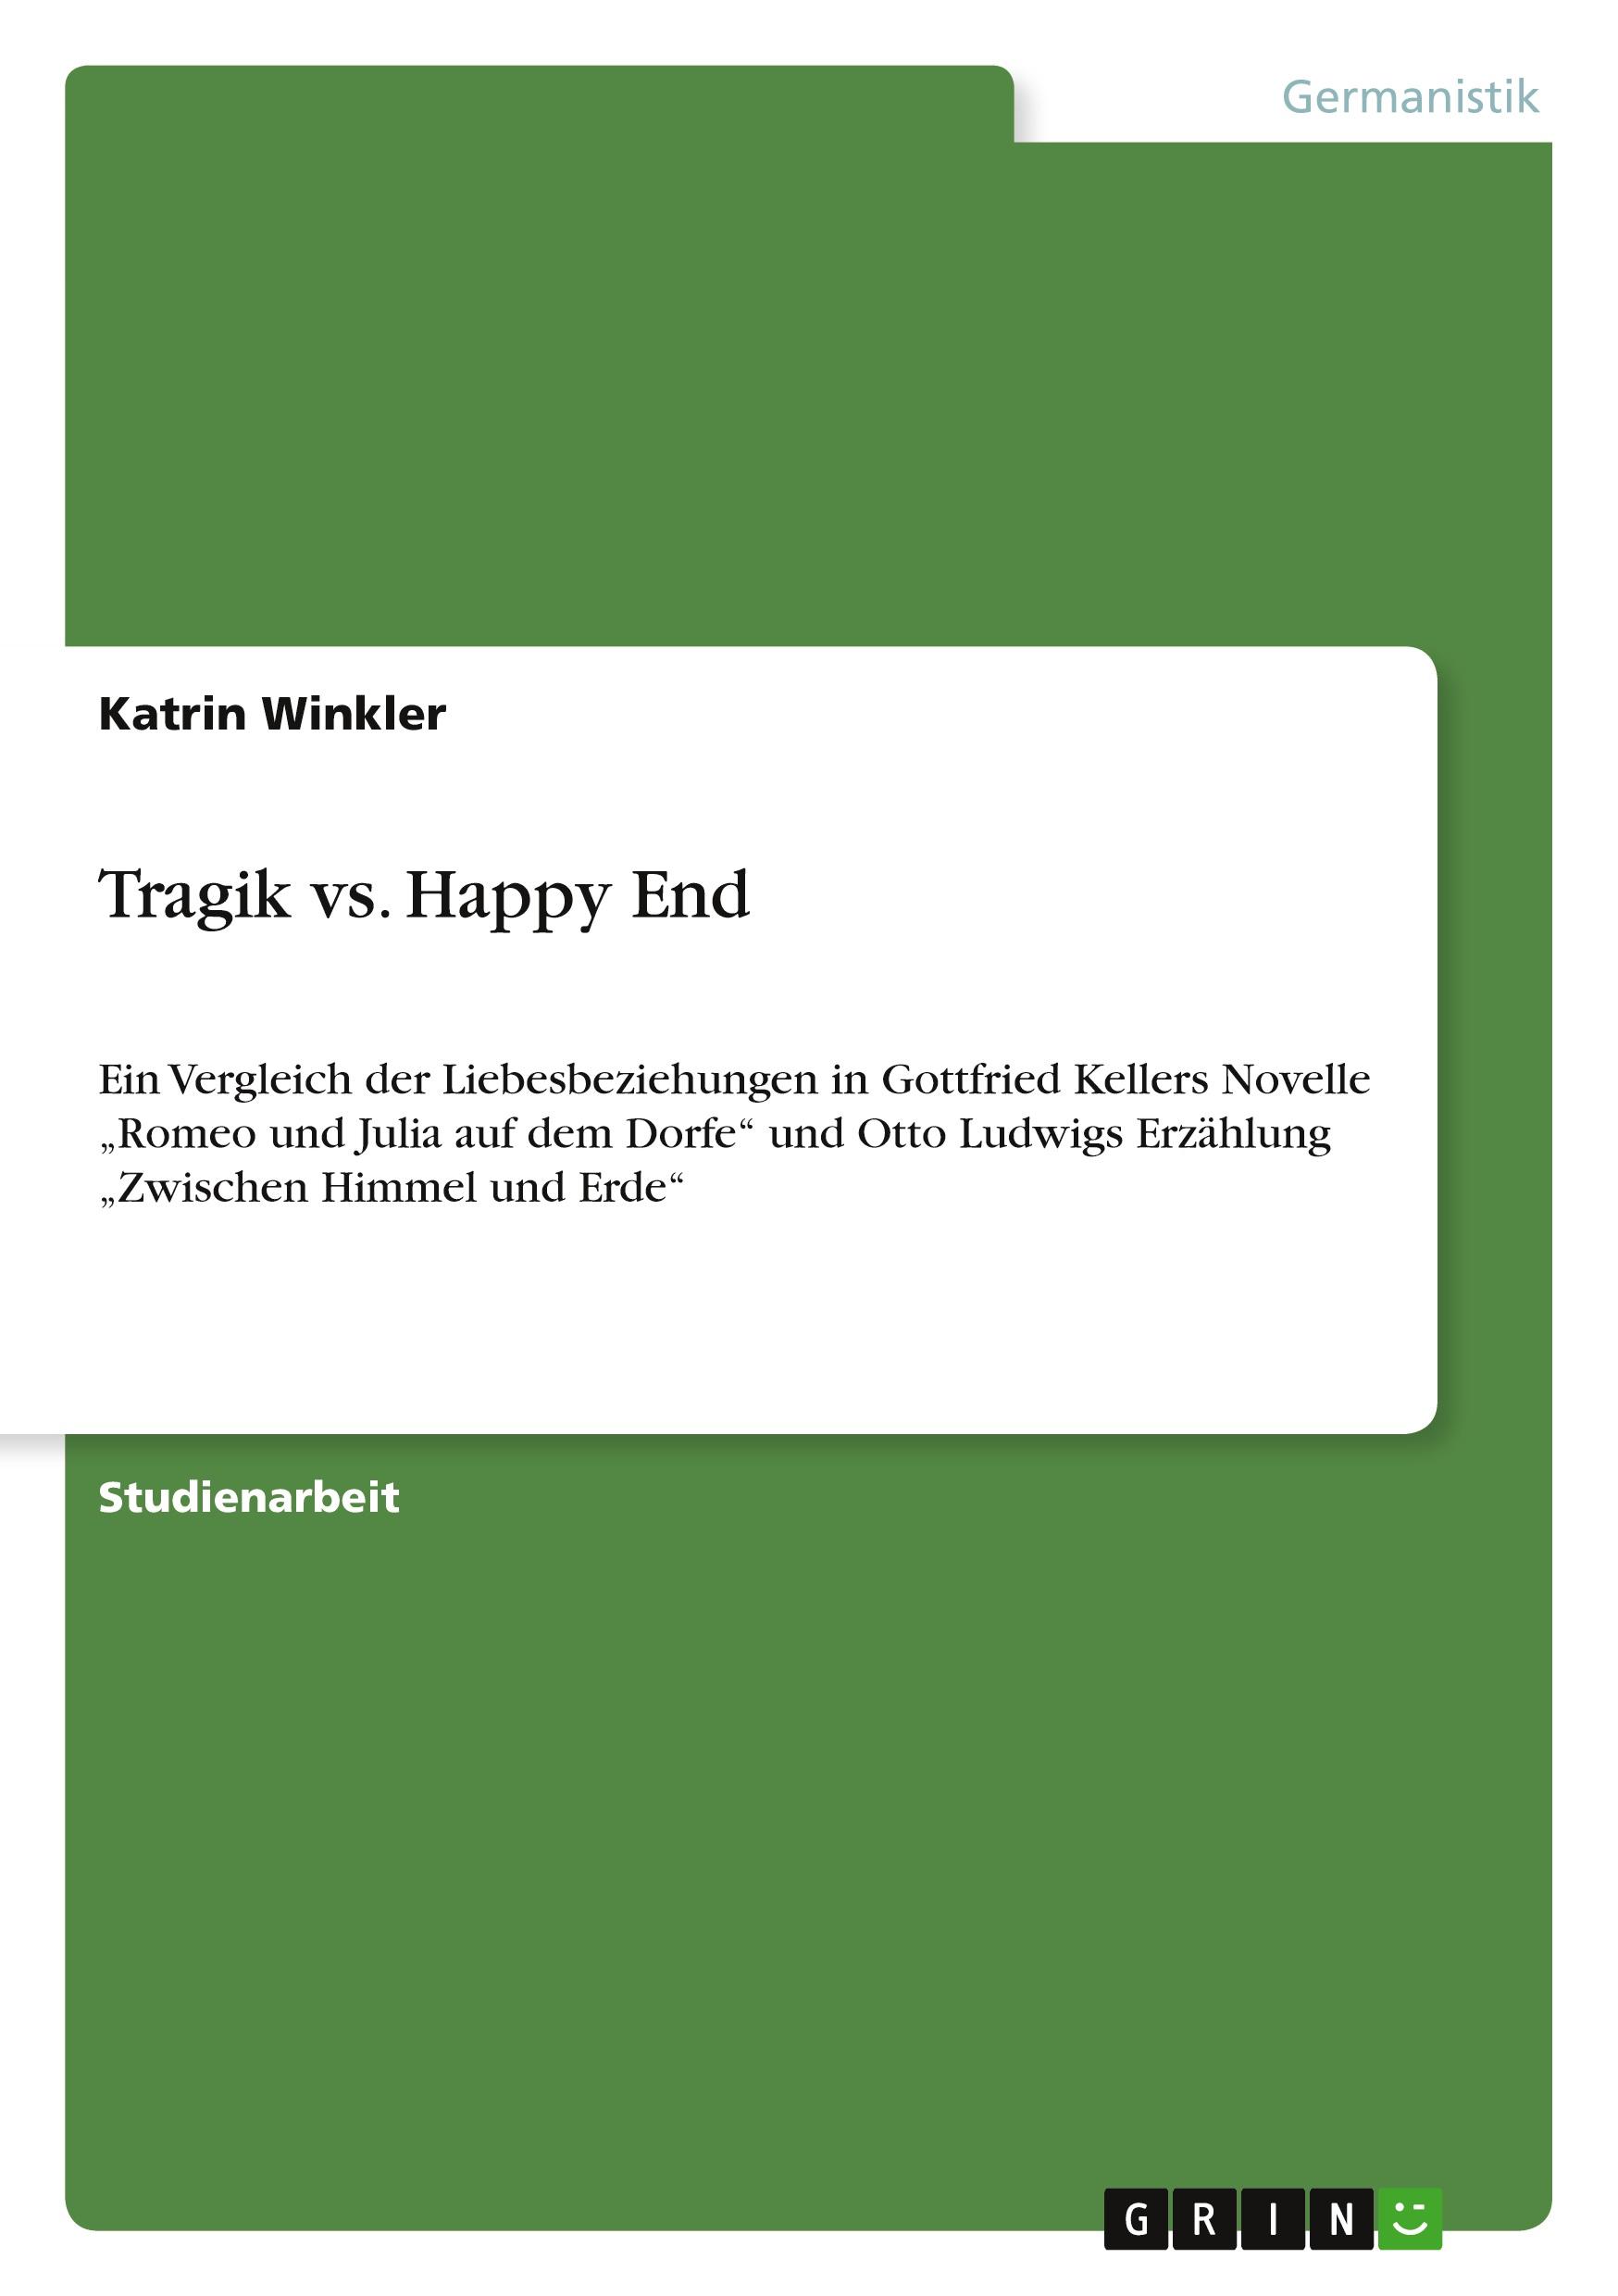 Tragik vs. Happy End  Ein Vergleich der Liebesbeziehungen in Gottfried Kellers Novelle 